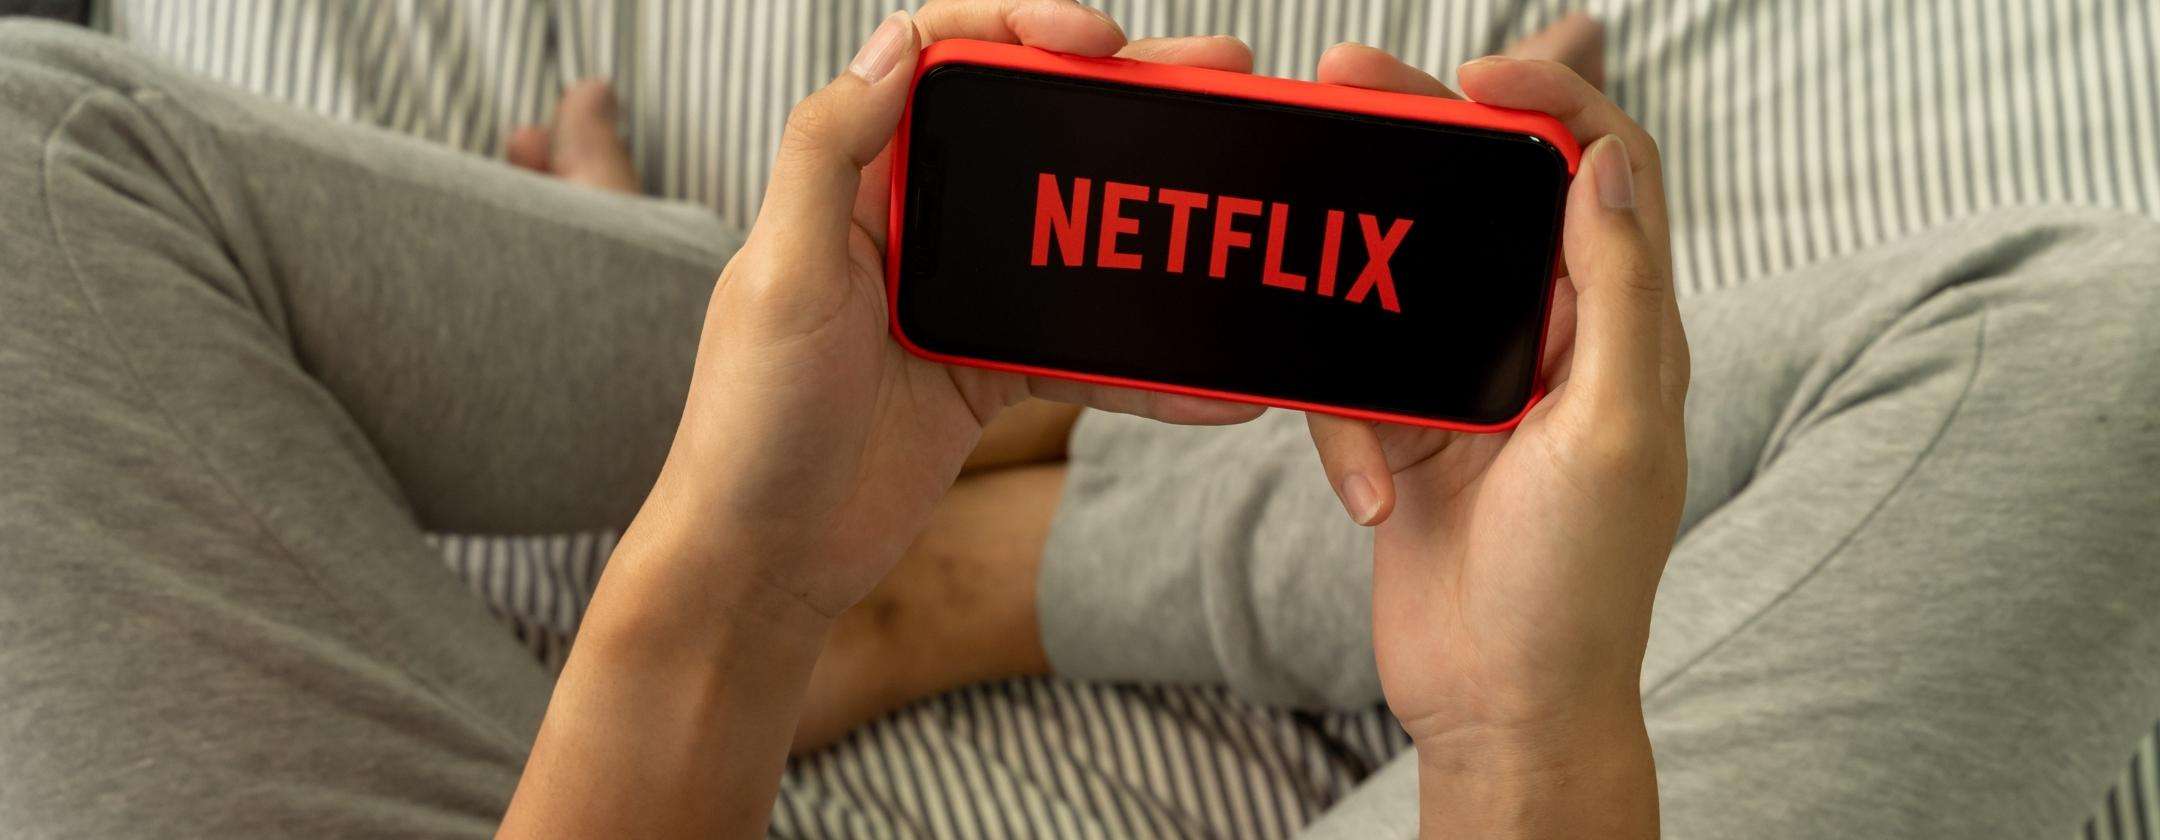 Netflix pensa allo streaming live: altra novità in arrivo?